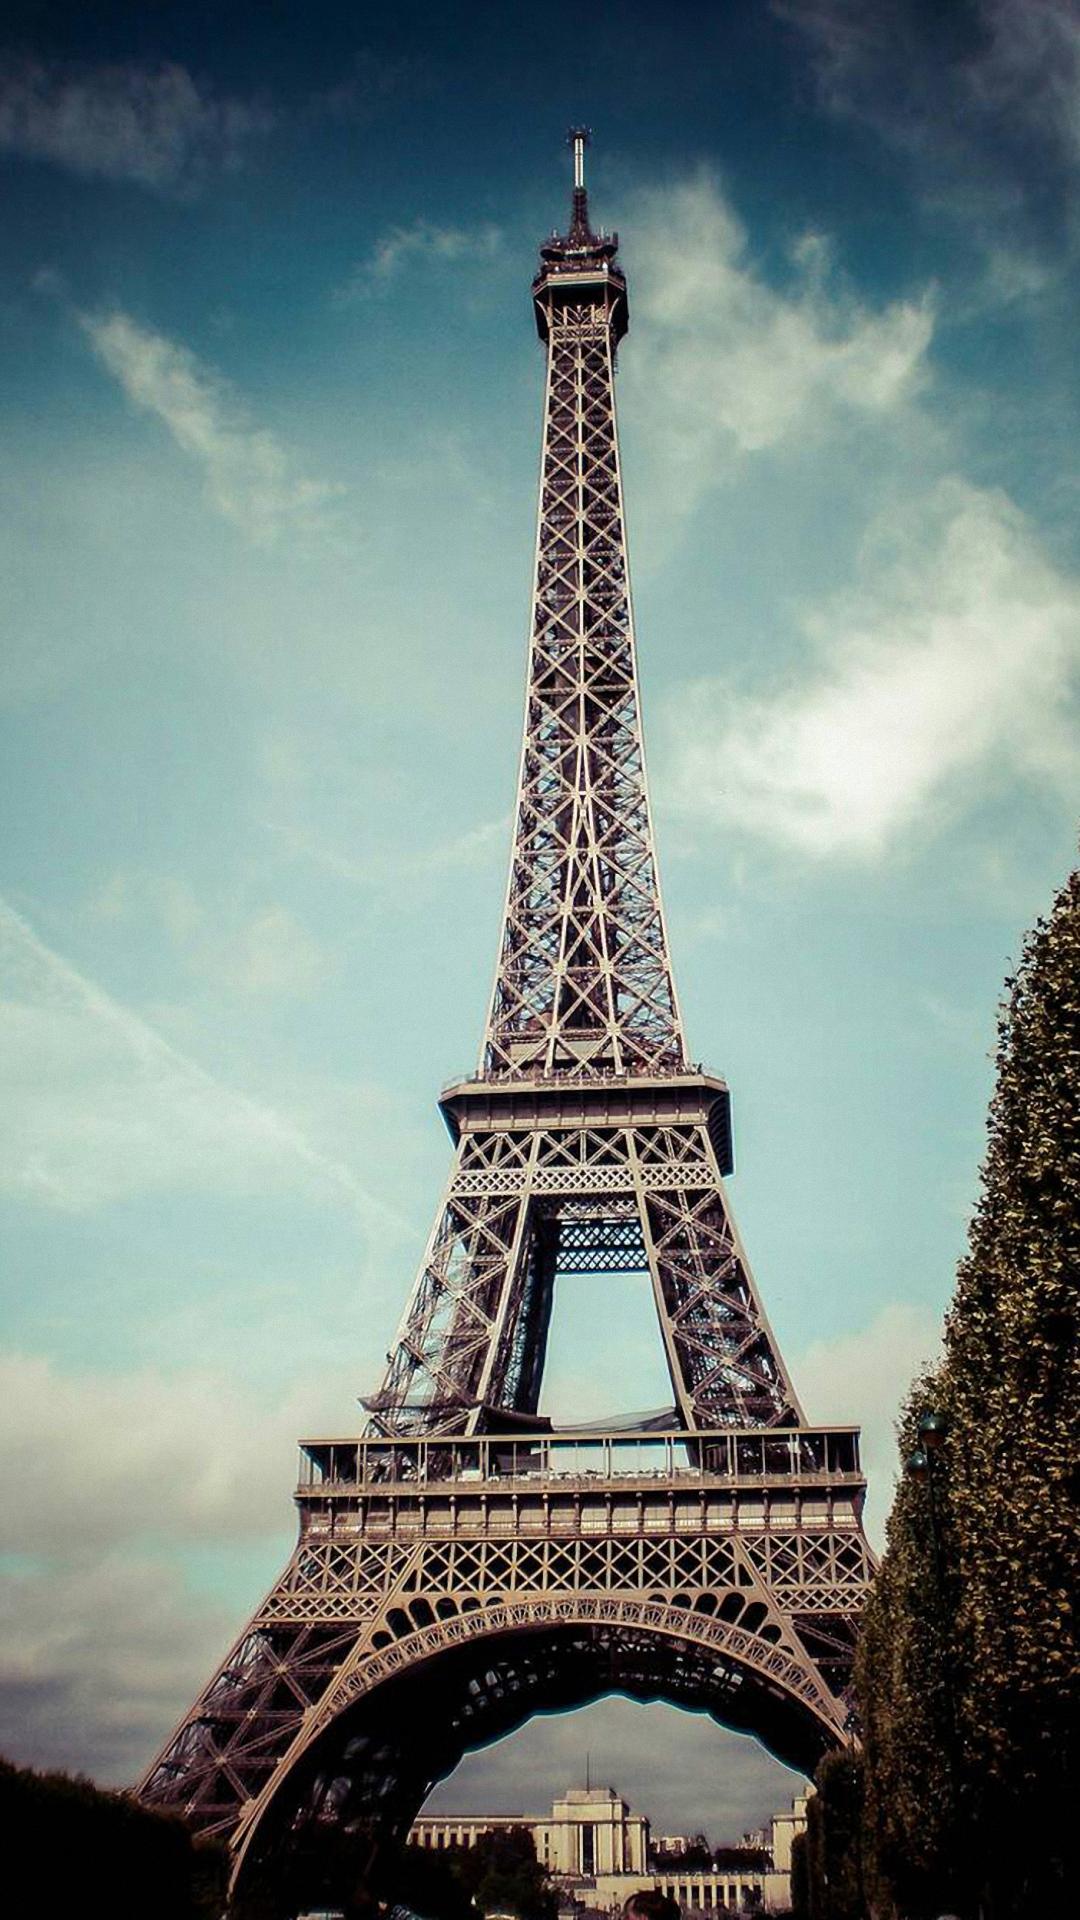 Tìm kiếm những bức ảnh cảnh đẹp về Paris là một trong những cách để giúp bạn tạo cho mình một tinh thần mới. Sử dụng những nền tuyệt đẹp này để trang trí màn hình của bạn sẽ khiến bạn cảm thấy thật sự đặt chân đến Paris với tính thẩm mỹ cực cao.